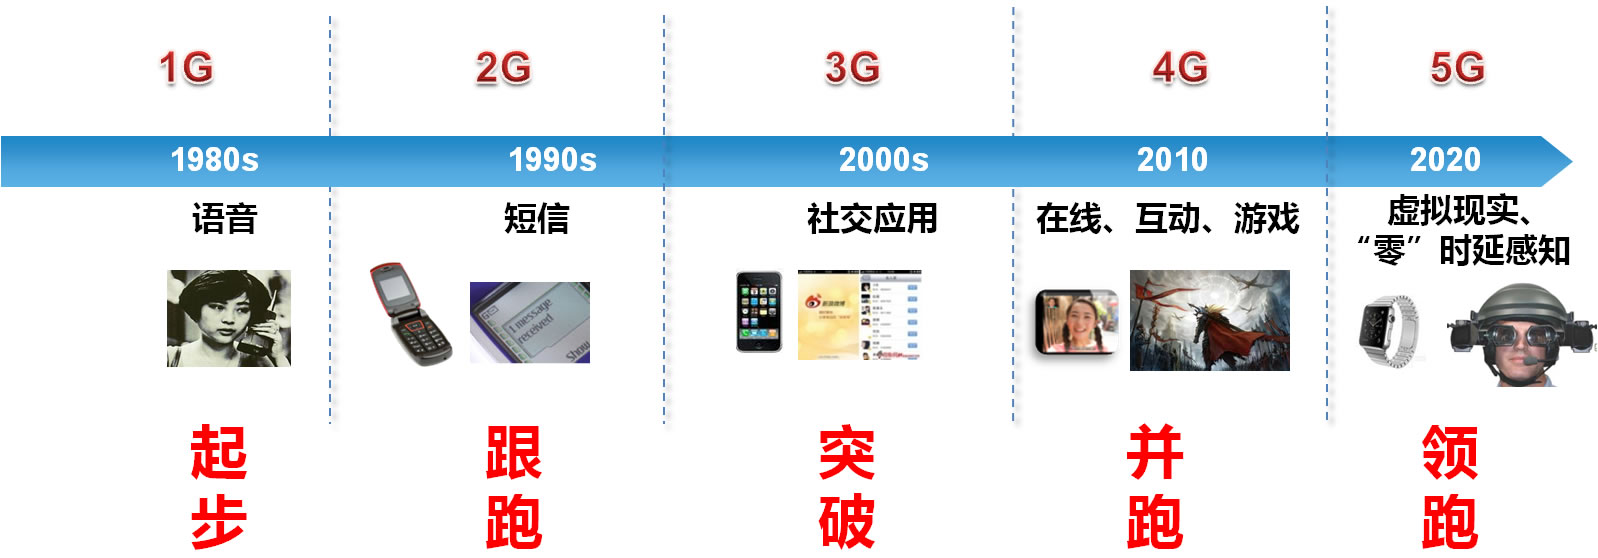 中国移动通信发展.jpg